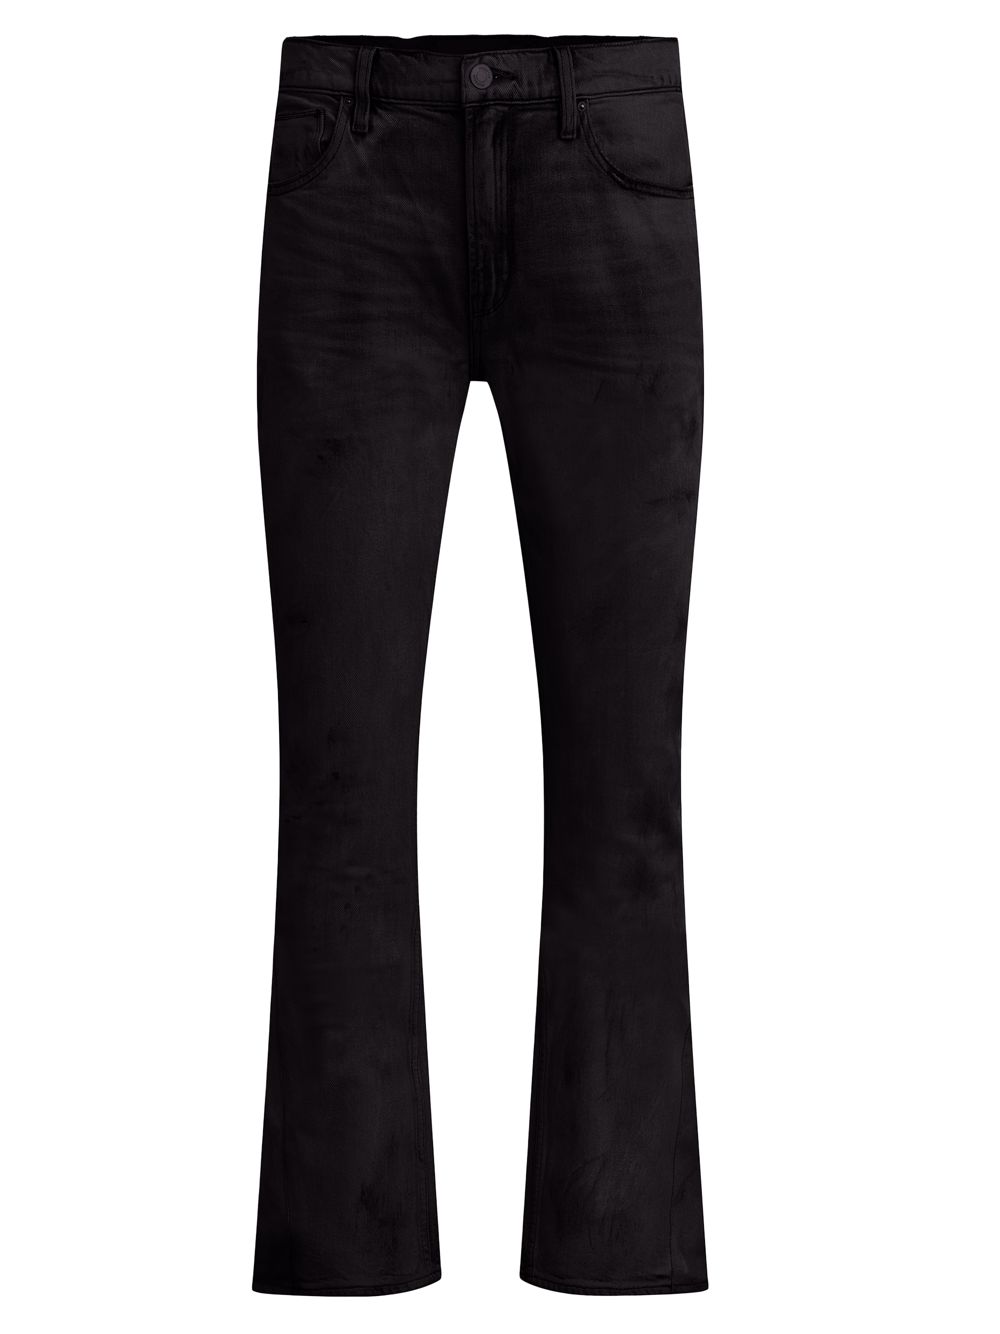 Джинсовые брюки Walker Kick Flare Hudson Jeans, черный